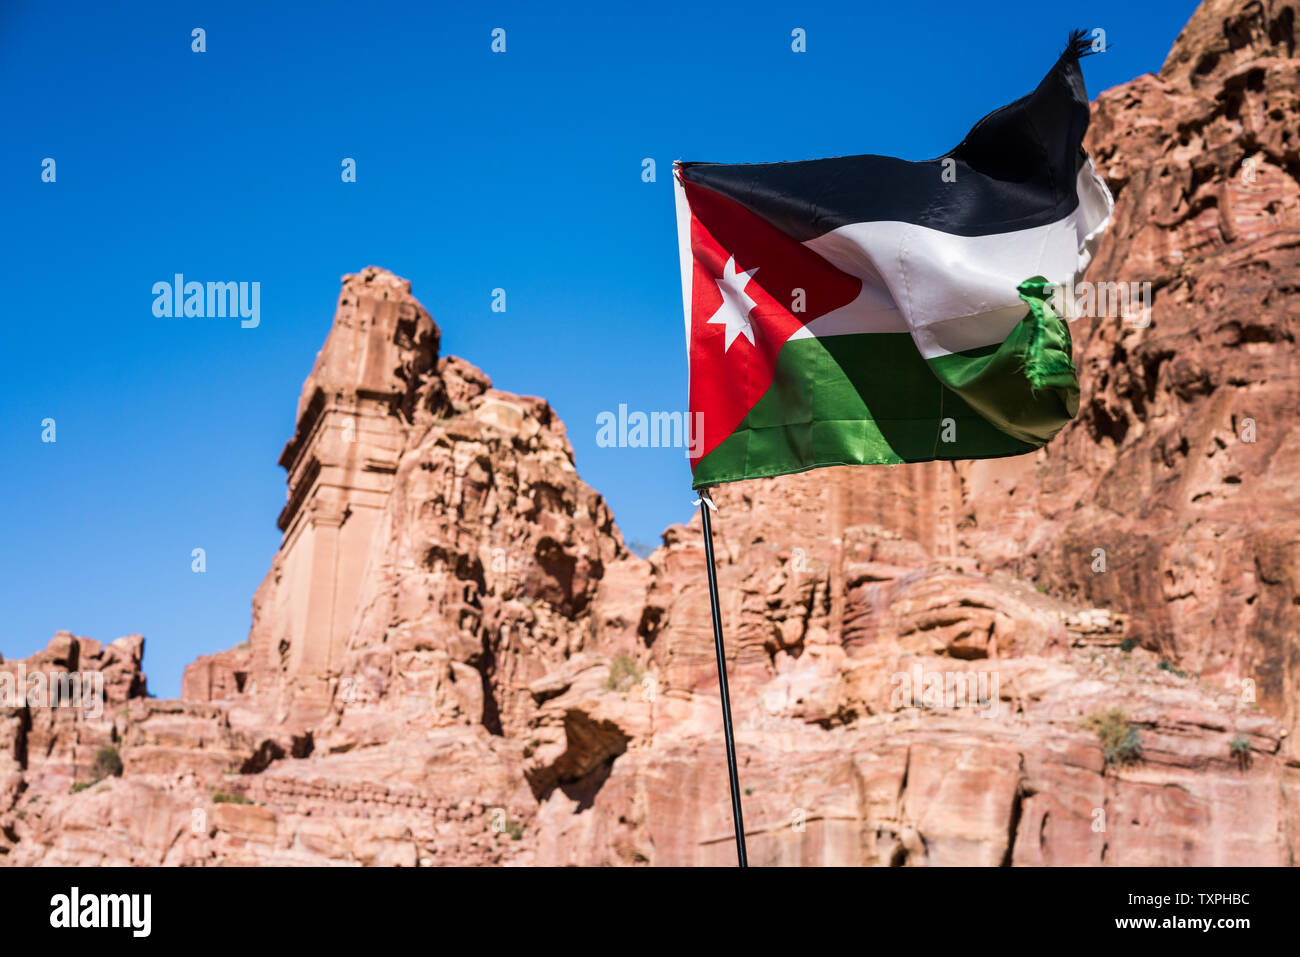 Petra, Jordan Stock Photo